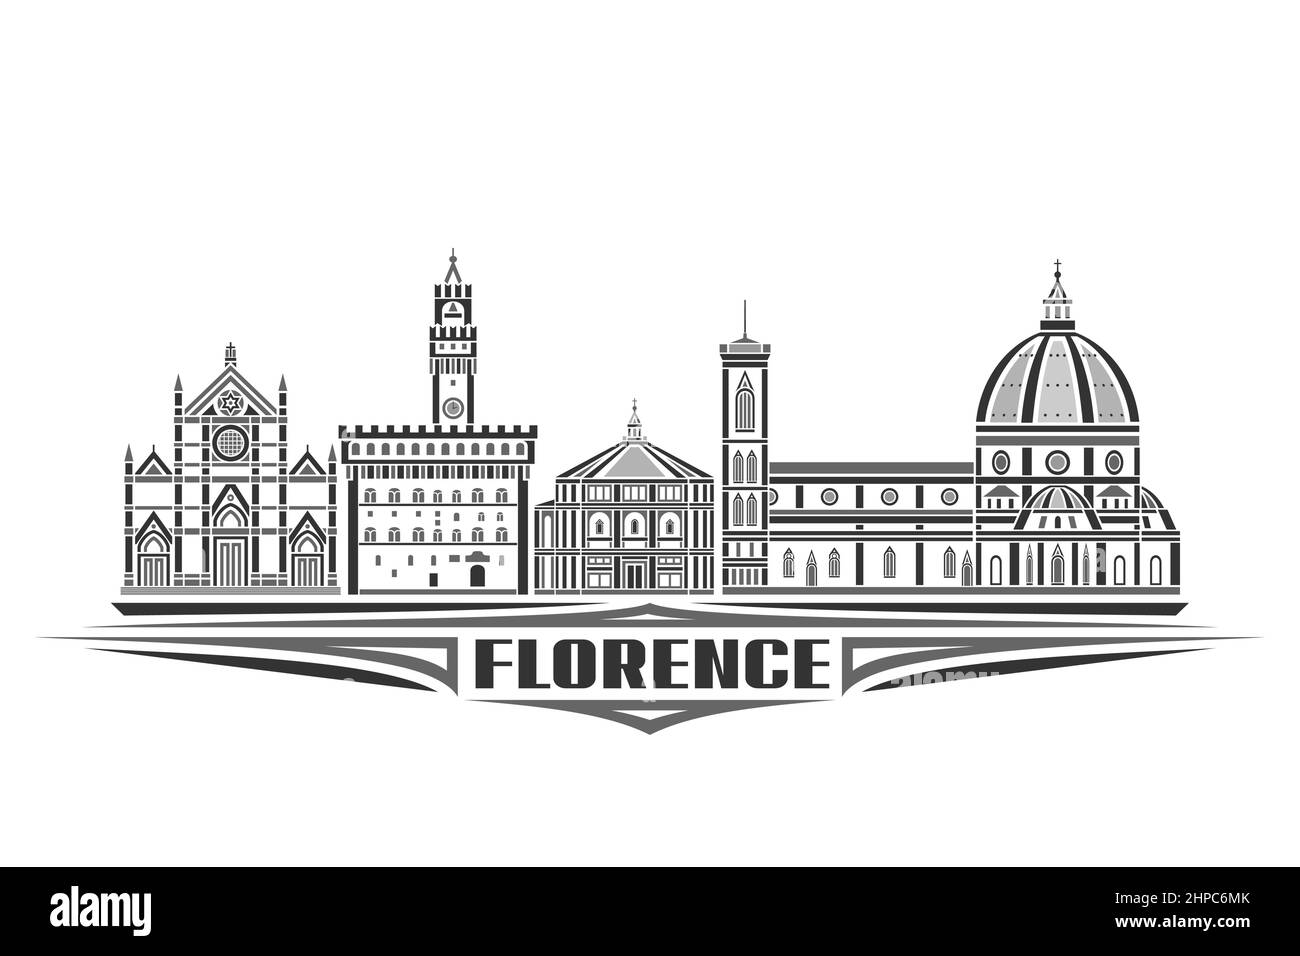 Illustration vectorielle de Florence, affiche horizontale monochrome avec design linéaire célèbre paysage de la ville de florence, concept d'art urbain avec le décoratif Illustration de Vecteur